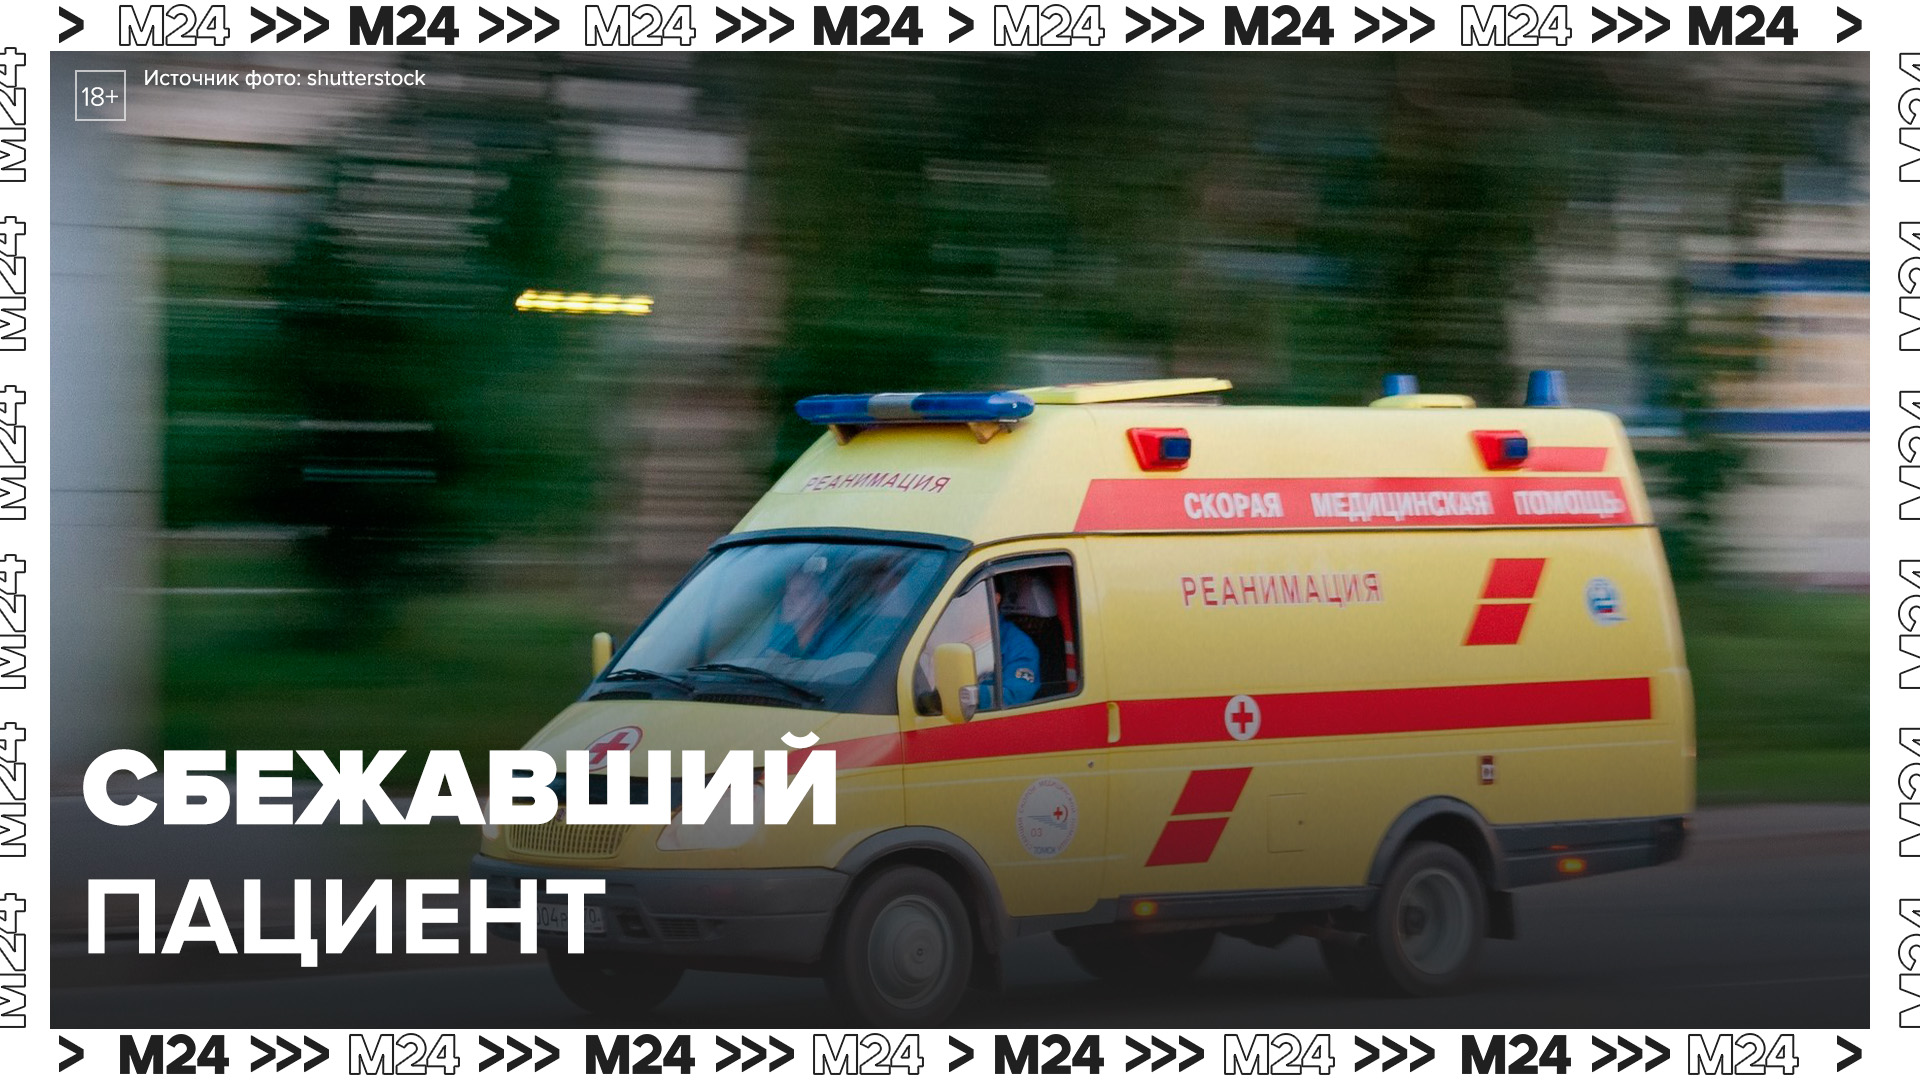 Сбежавшая больная. Реанимобиль скорой помощи. Скорая автомобиль. Скорая полиция. Вид через окно машина скорой помощи.